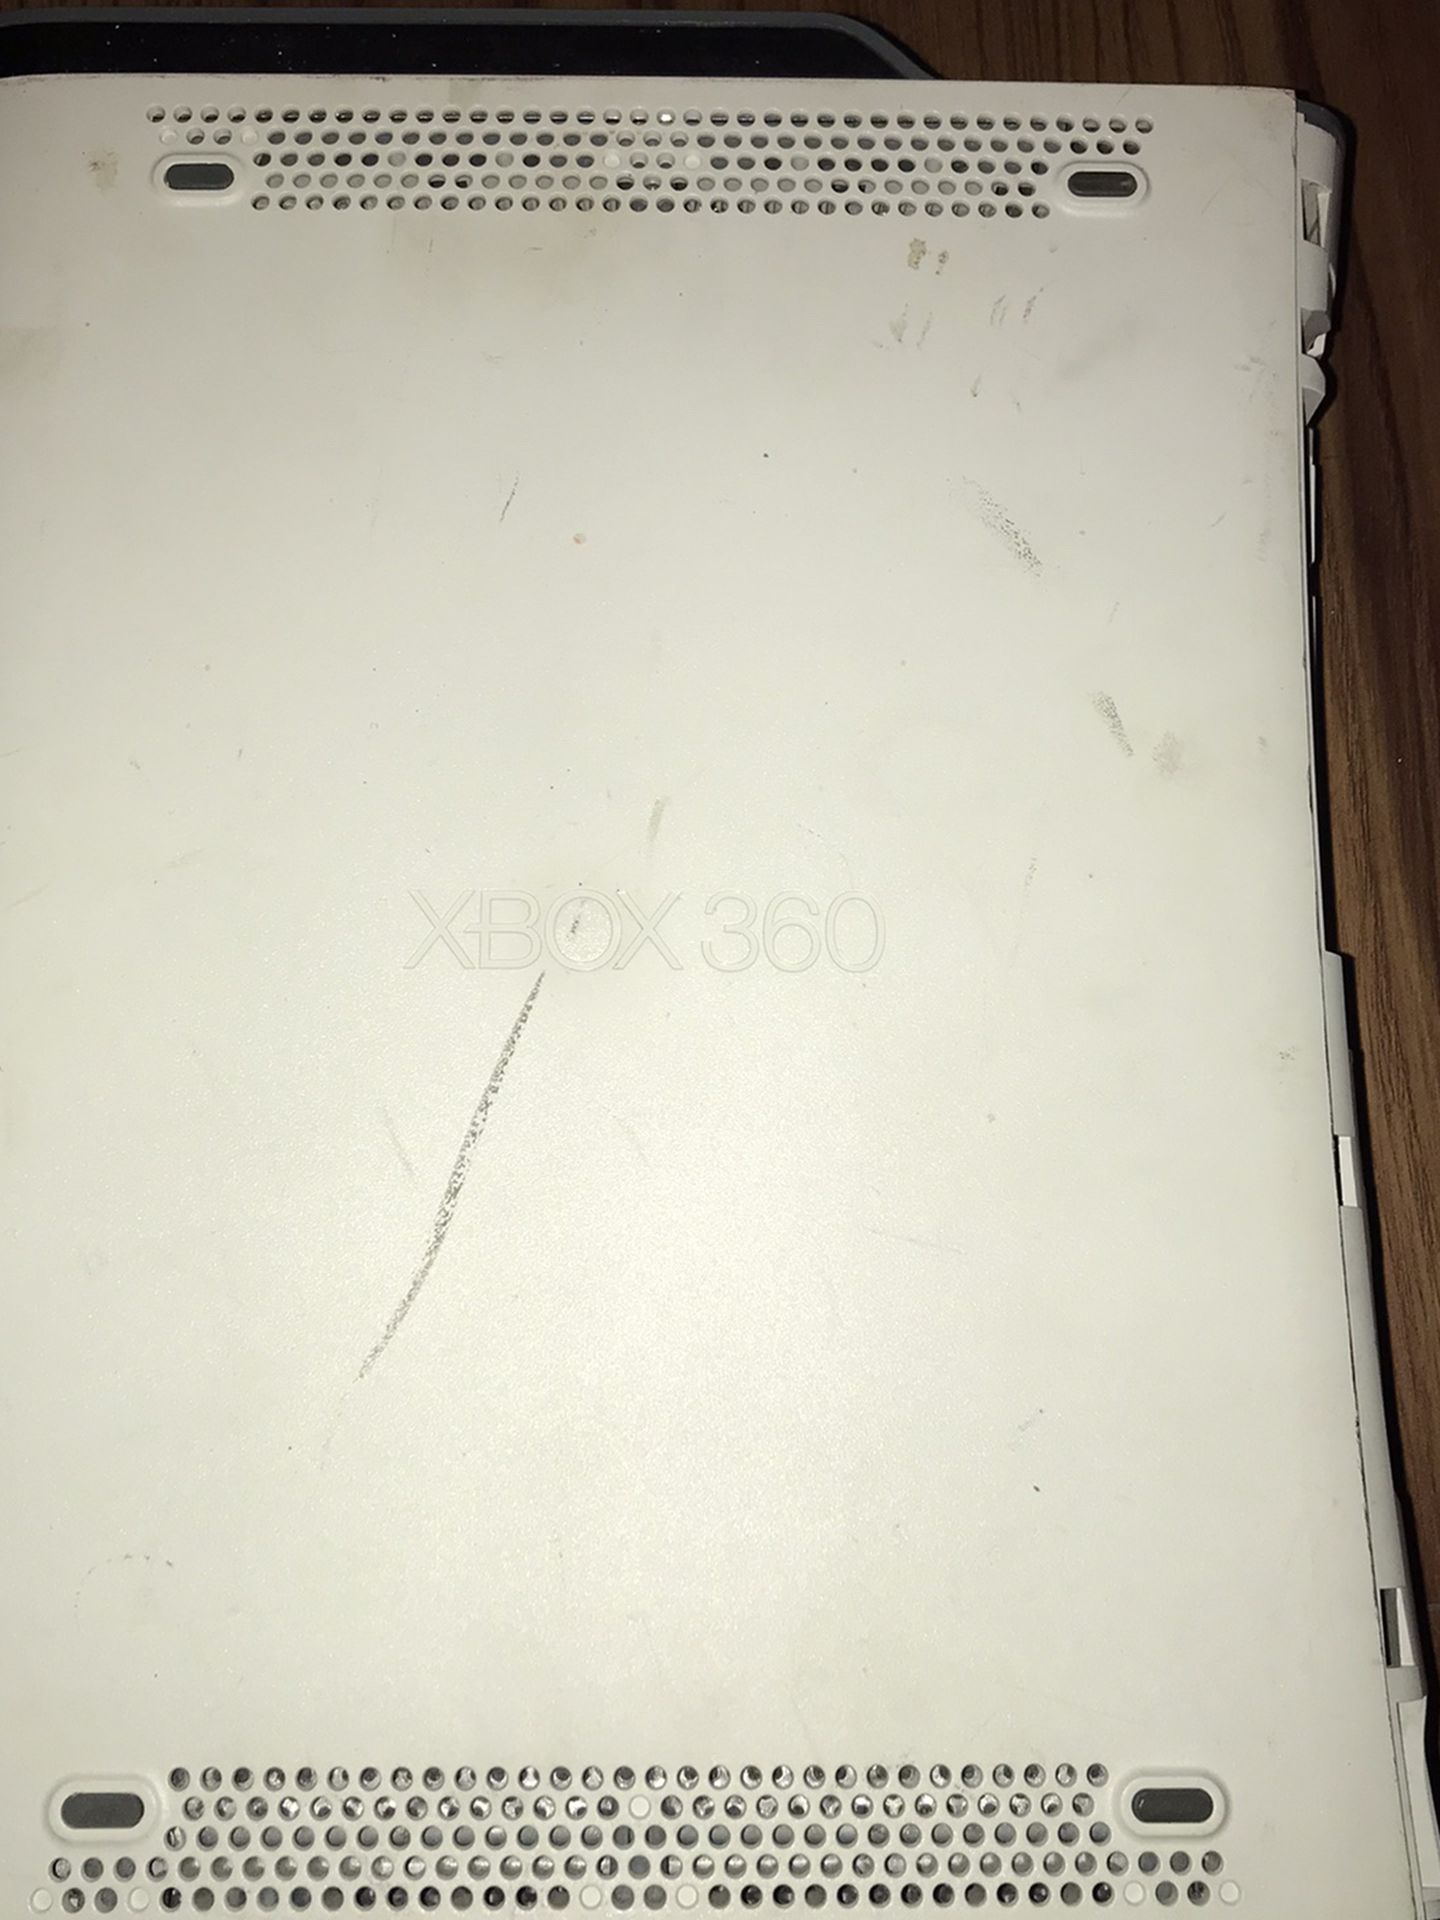 Xbox 360 (broken)